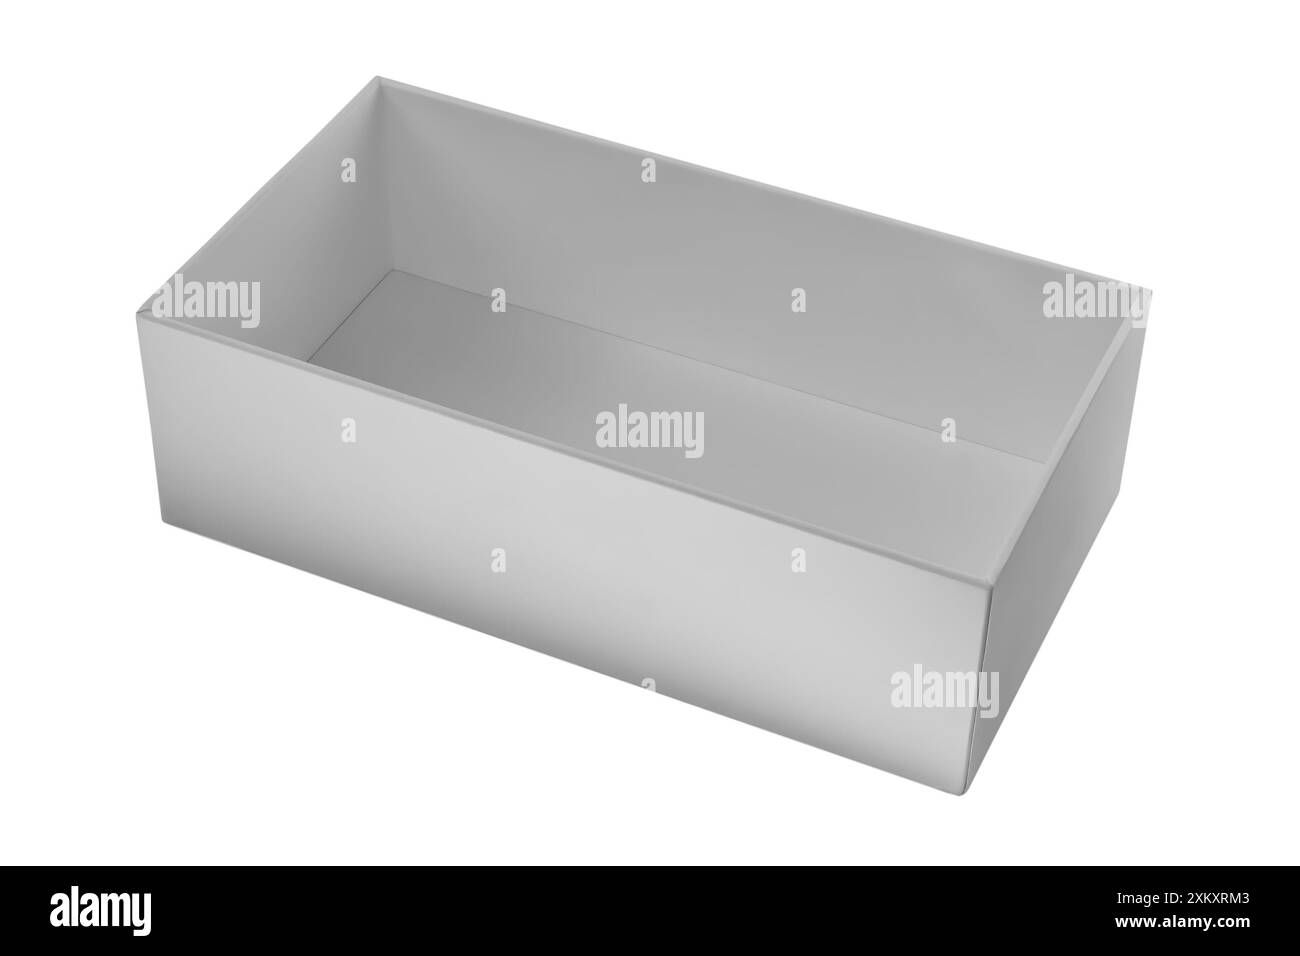 Boîte en carton rectangulaire blanche vide isolée sur fond blanc. Idéal pour les concepts d'emballage, d'expédition ou de stockage. Banque D'Images